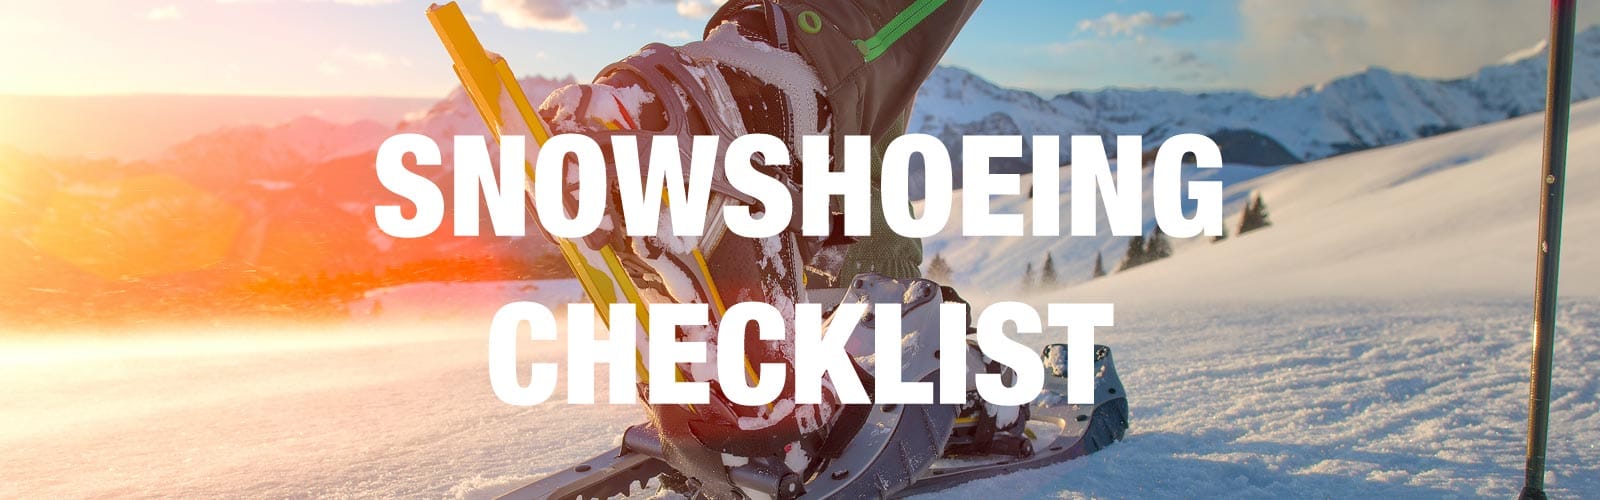 Snowshoeing Checklist